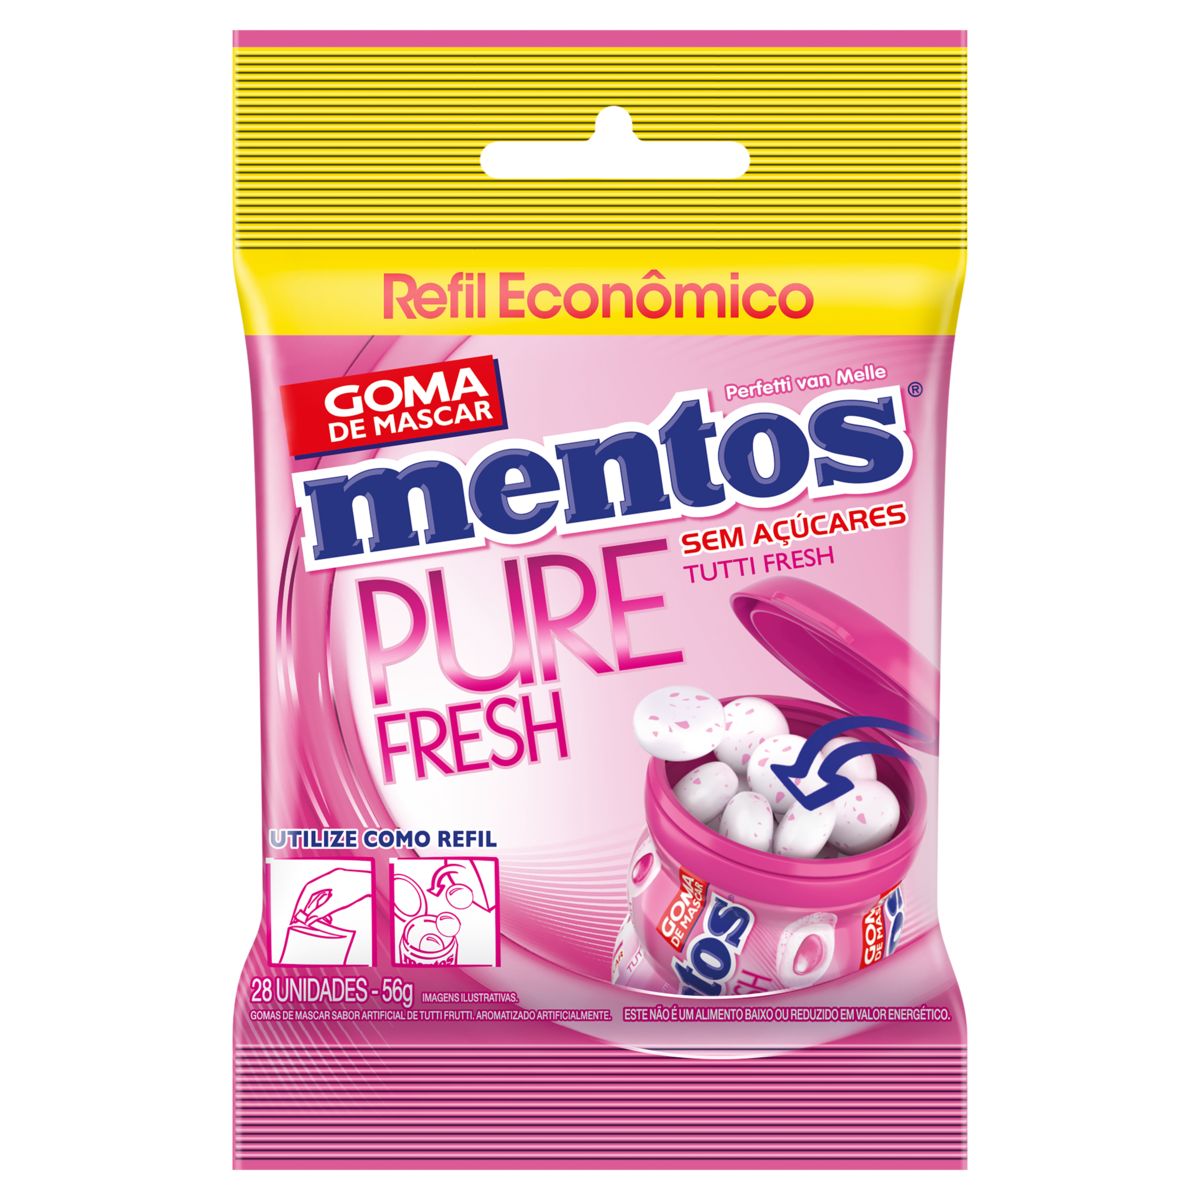 Goma de Mascar Mentos Pure Fresh Tutti Frutti Zero Açúcar 56g